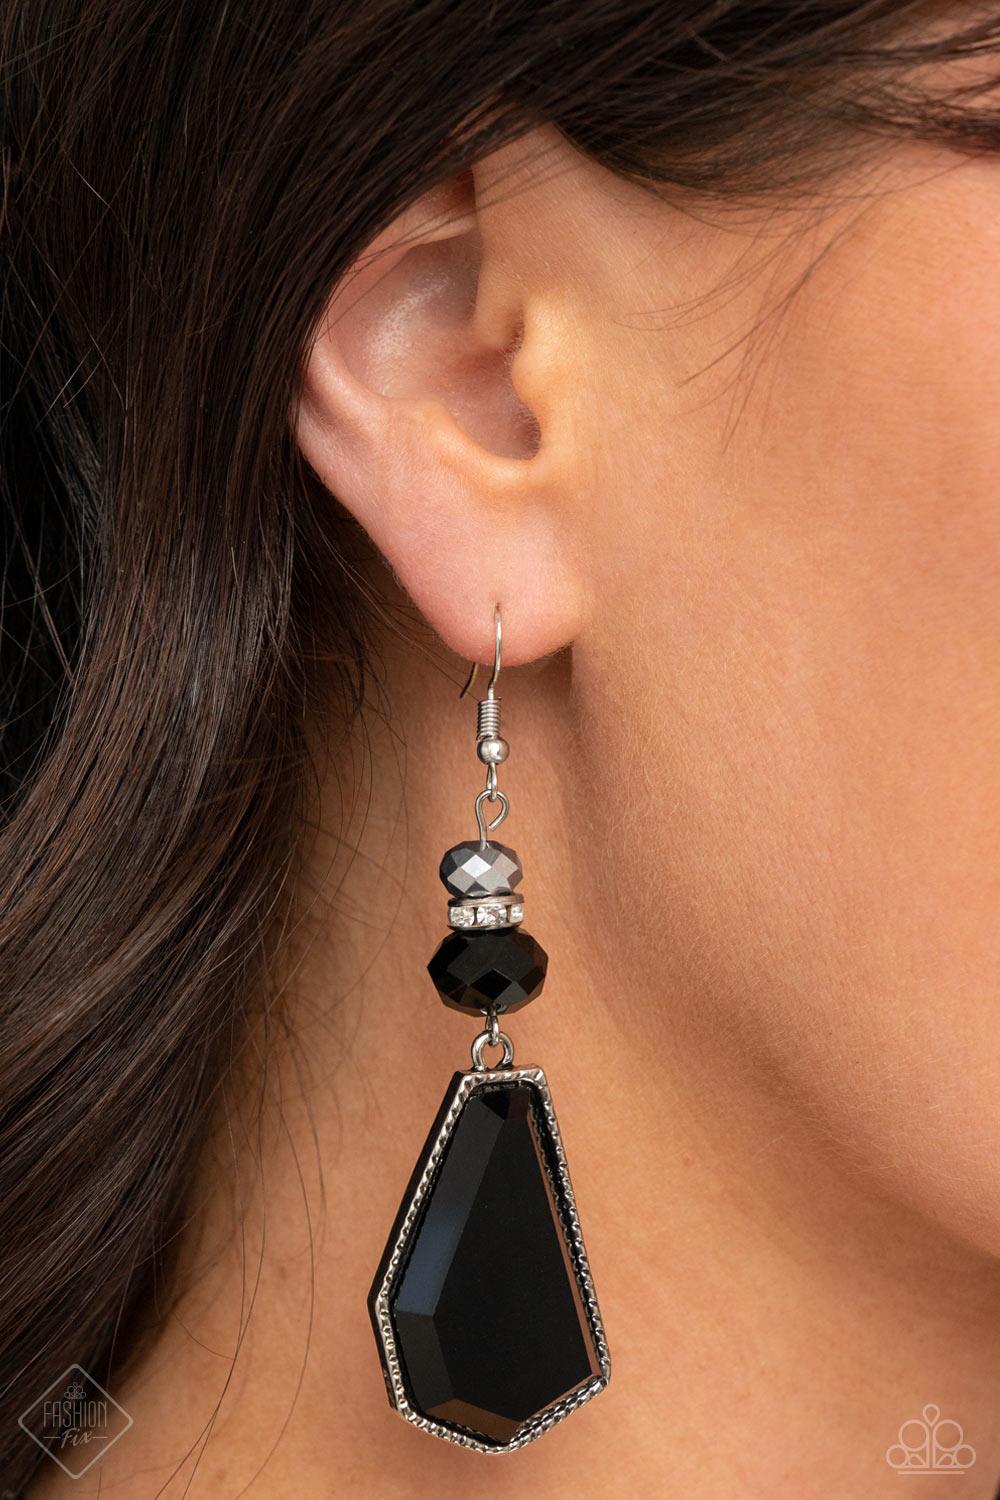 Defaced Dimension Black Earrings - Jewelry by Bretta